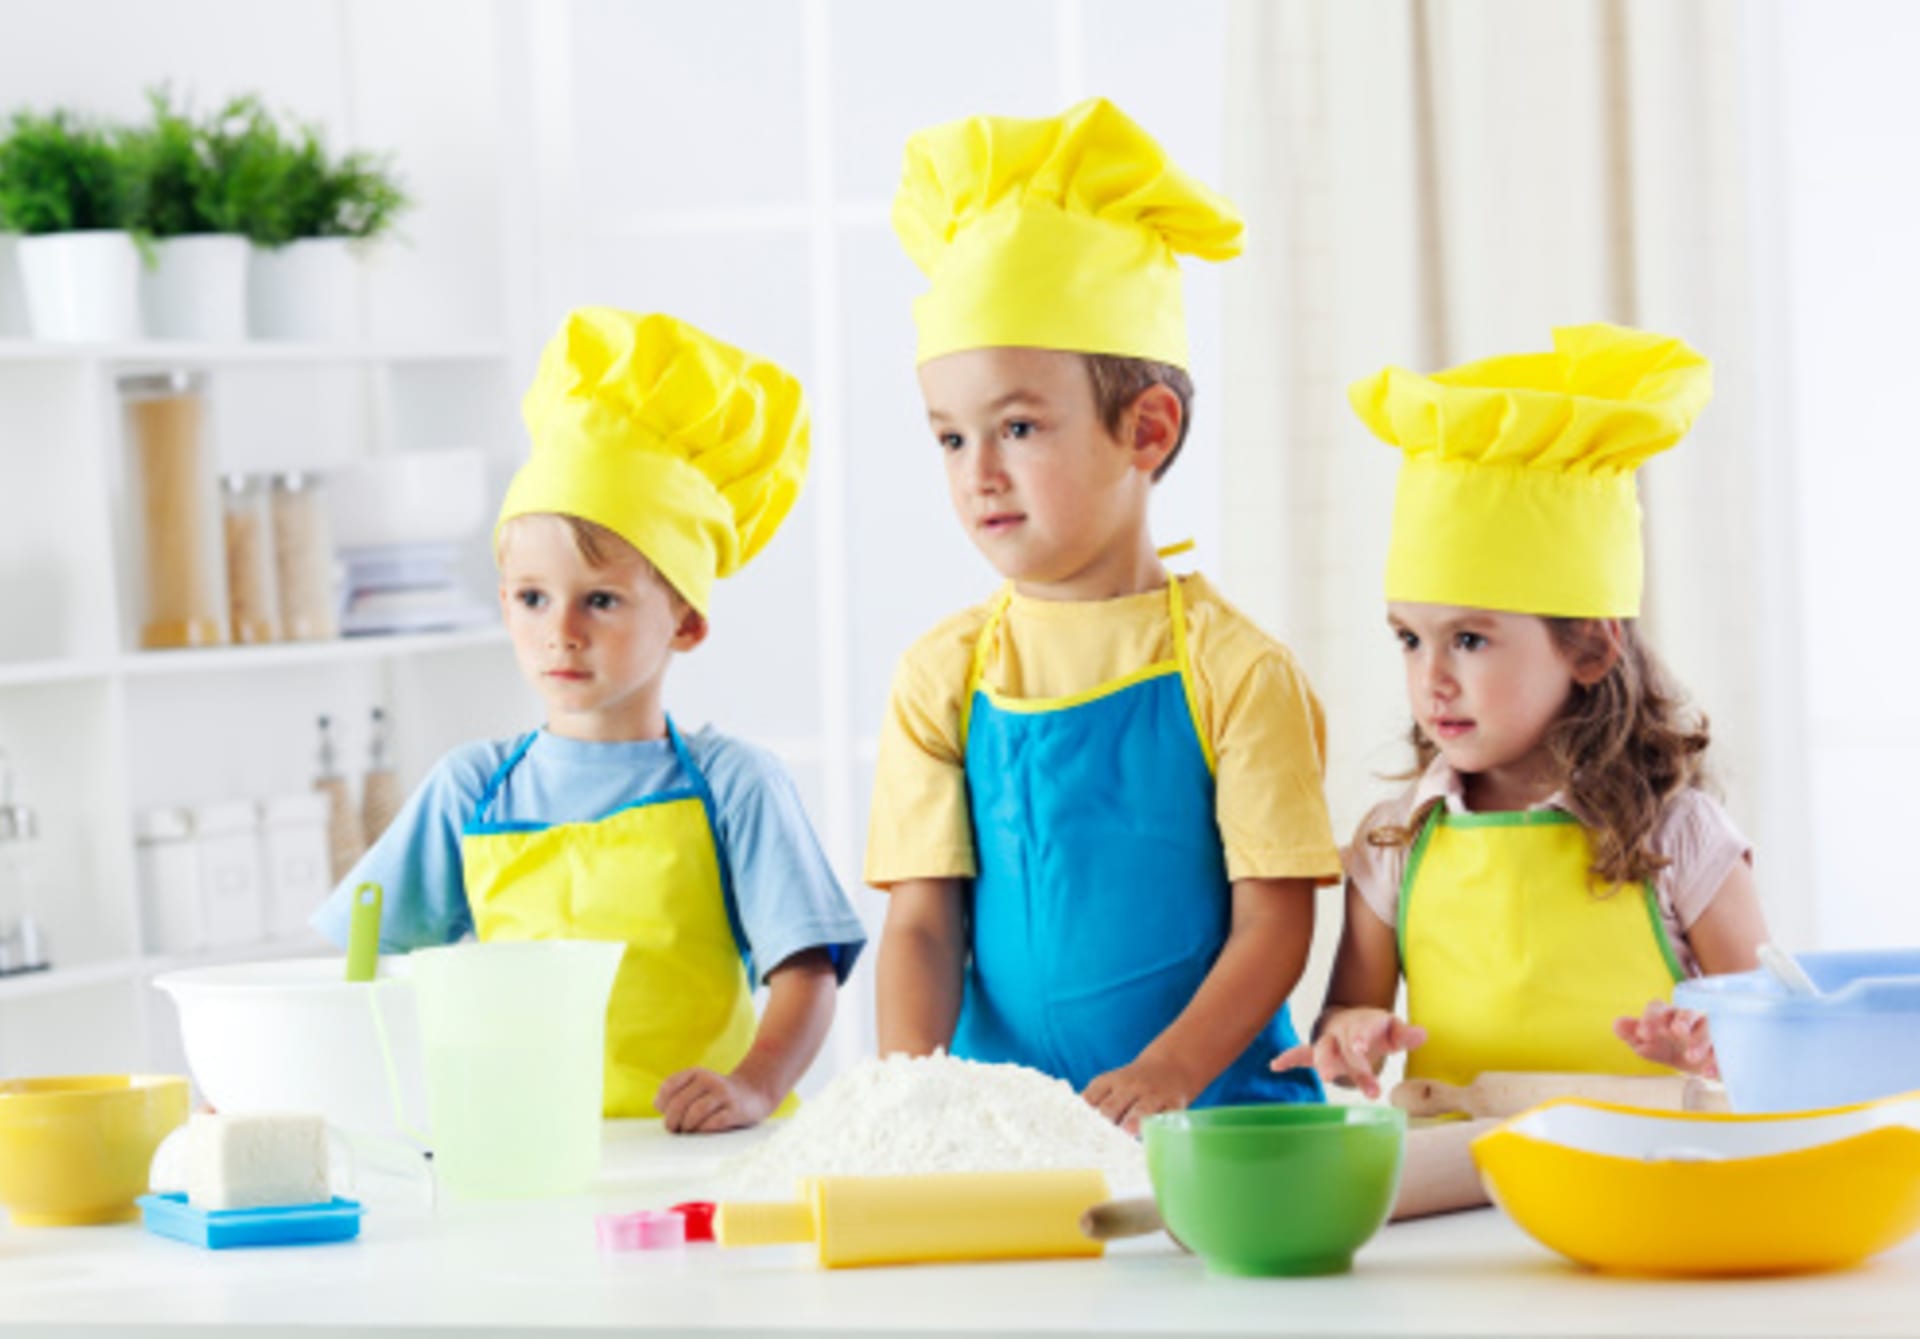 Kurzy vaření pro děti jsou hodně populární